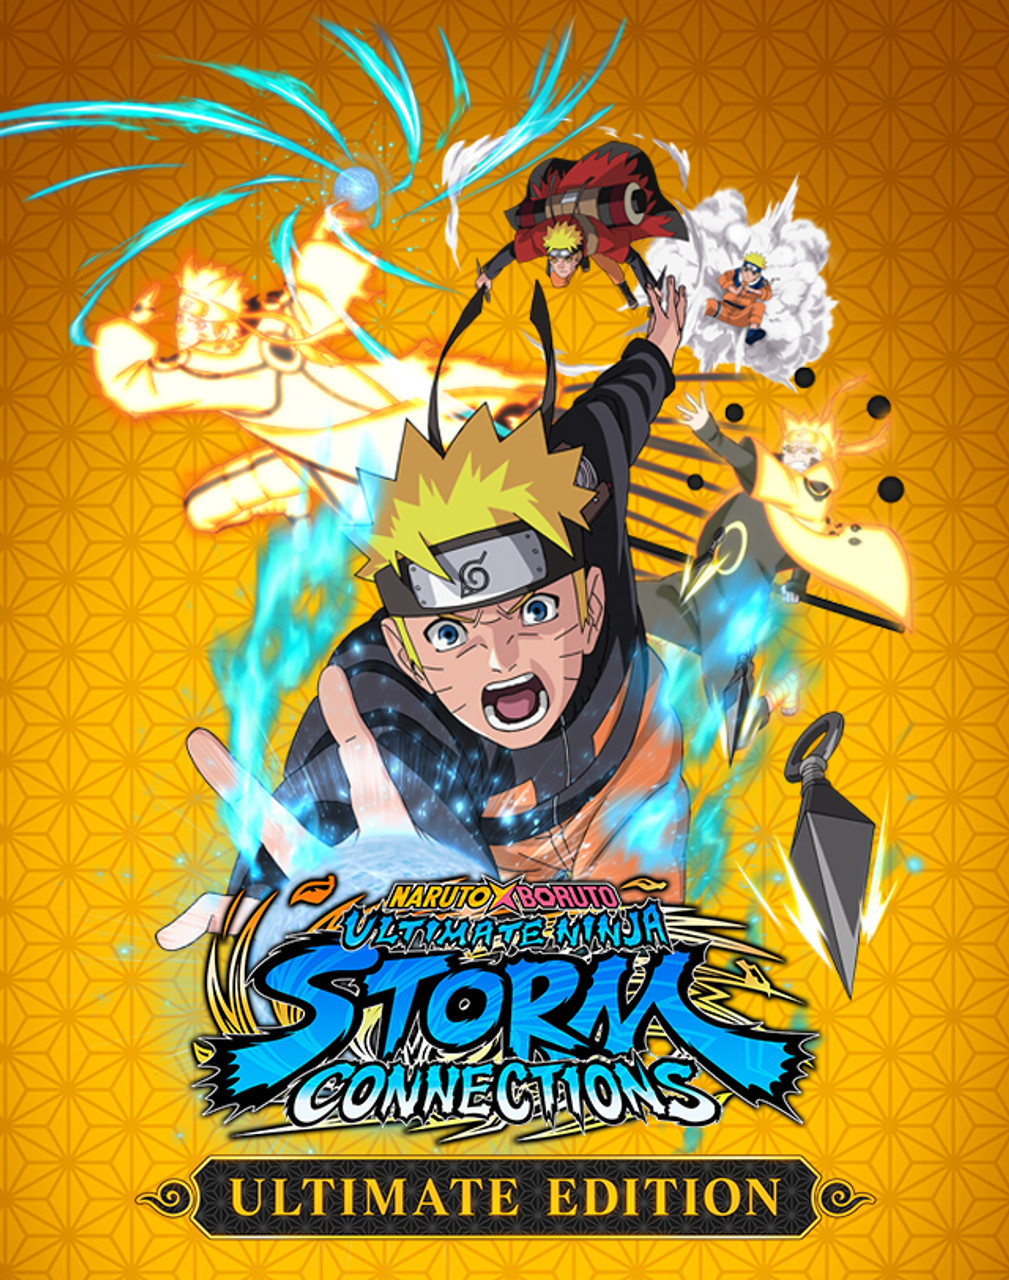 Naruto x Boruto Ultimate Ninja Storm Connections Game Adds New